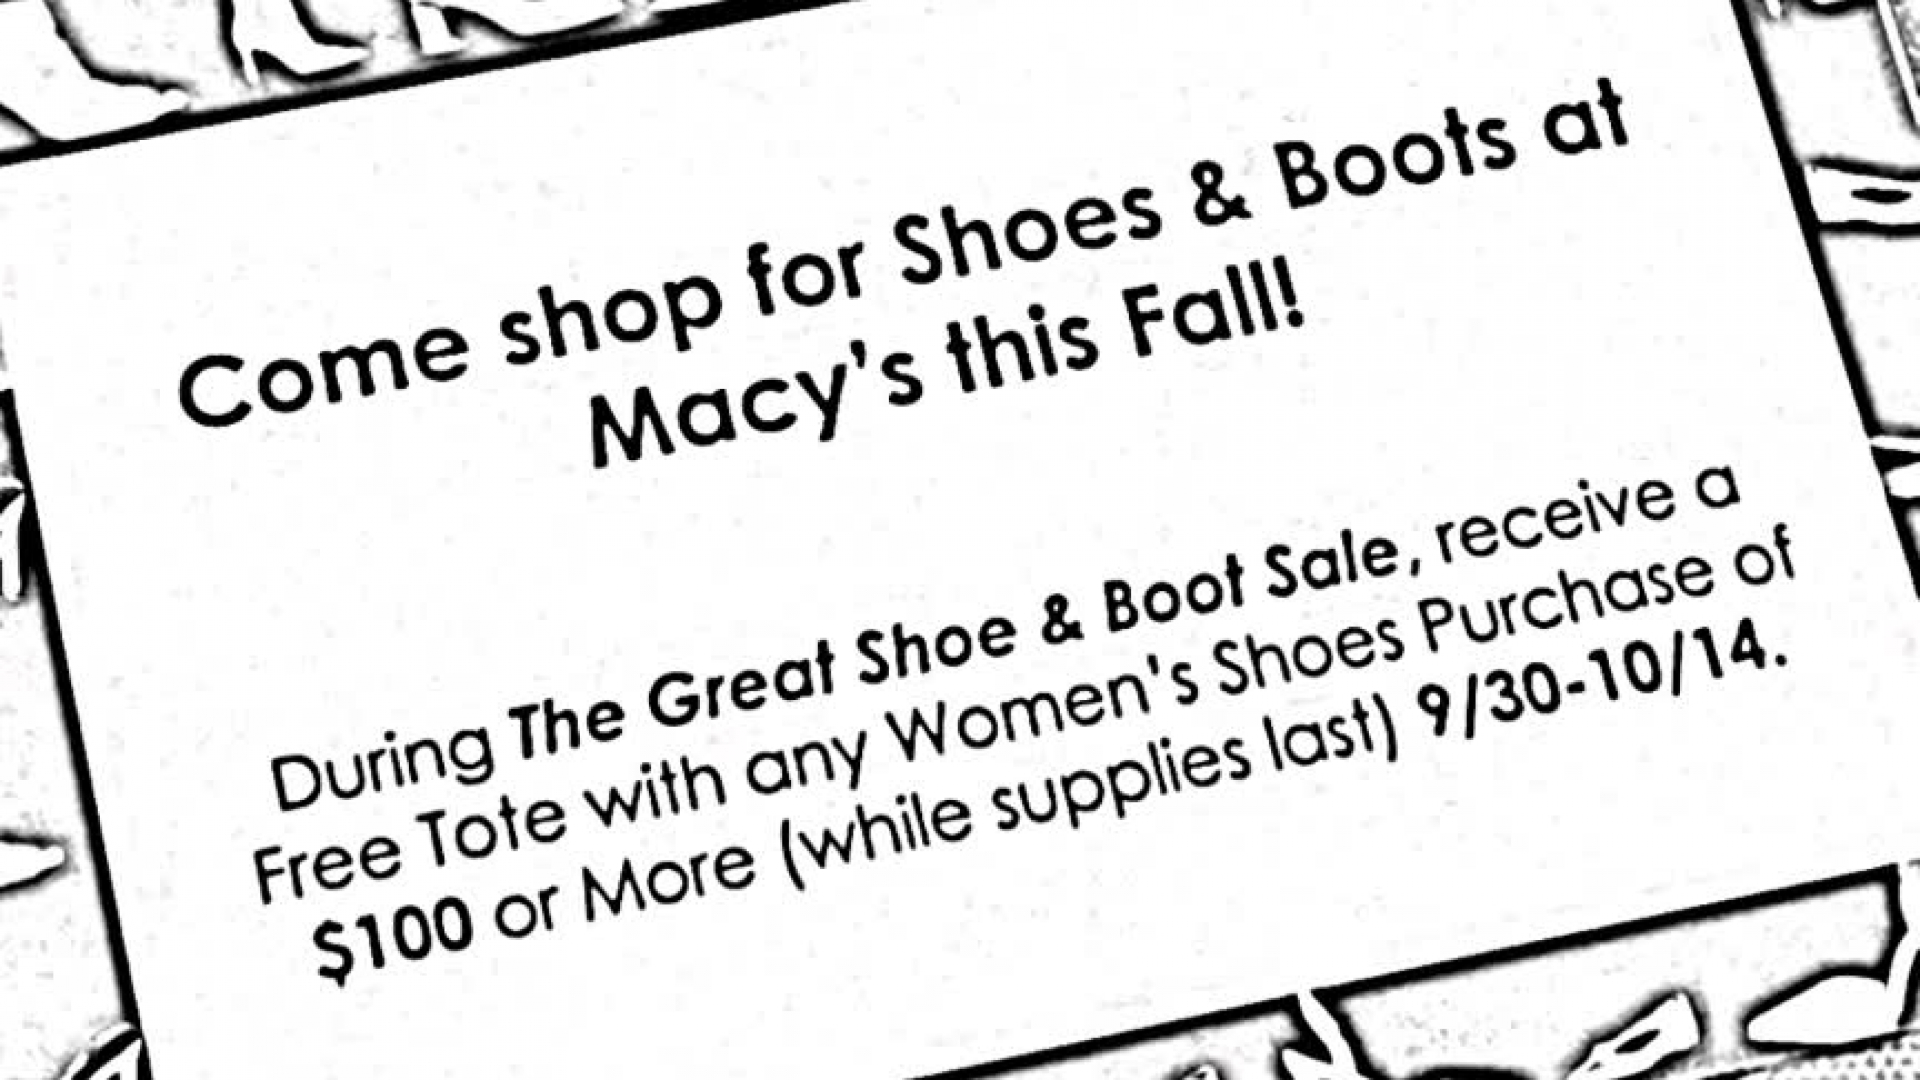 macy's great shoe sale